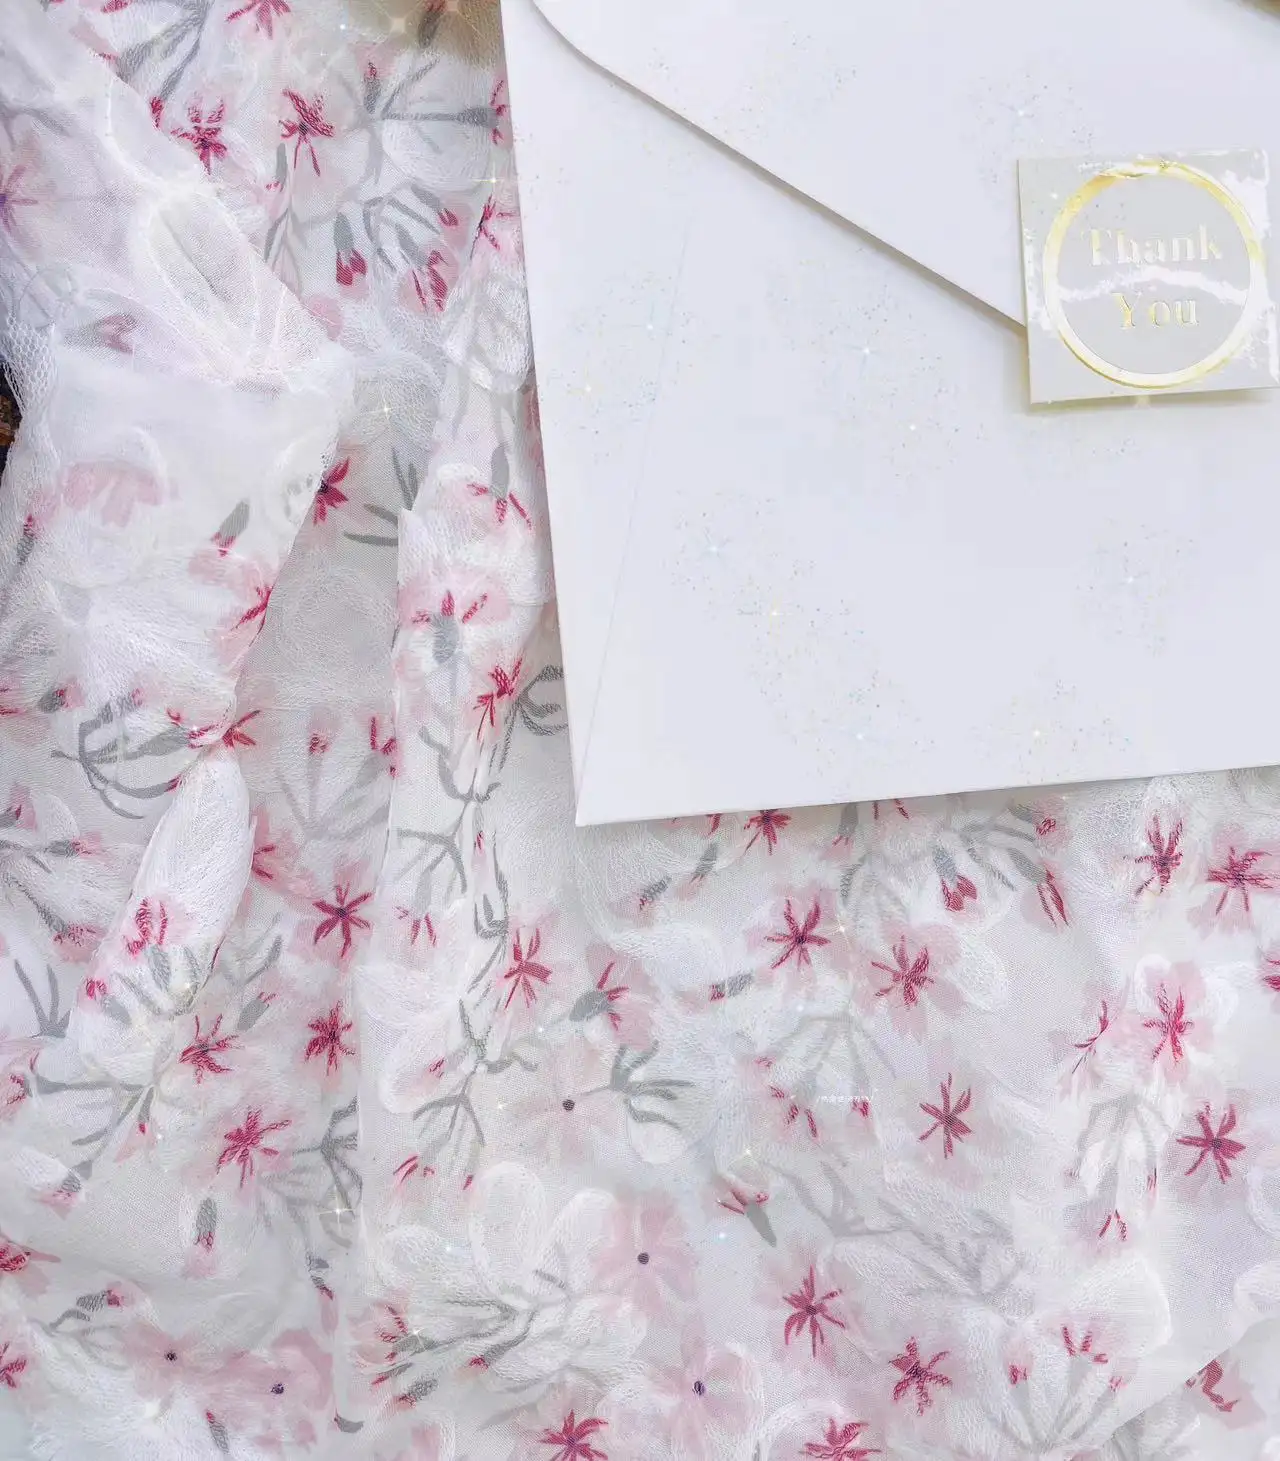 Vêtement de robe en soie de mûrier micro-extensible en tissu georgette de soie florale à impression numérique haut de gamme